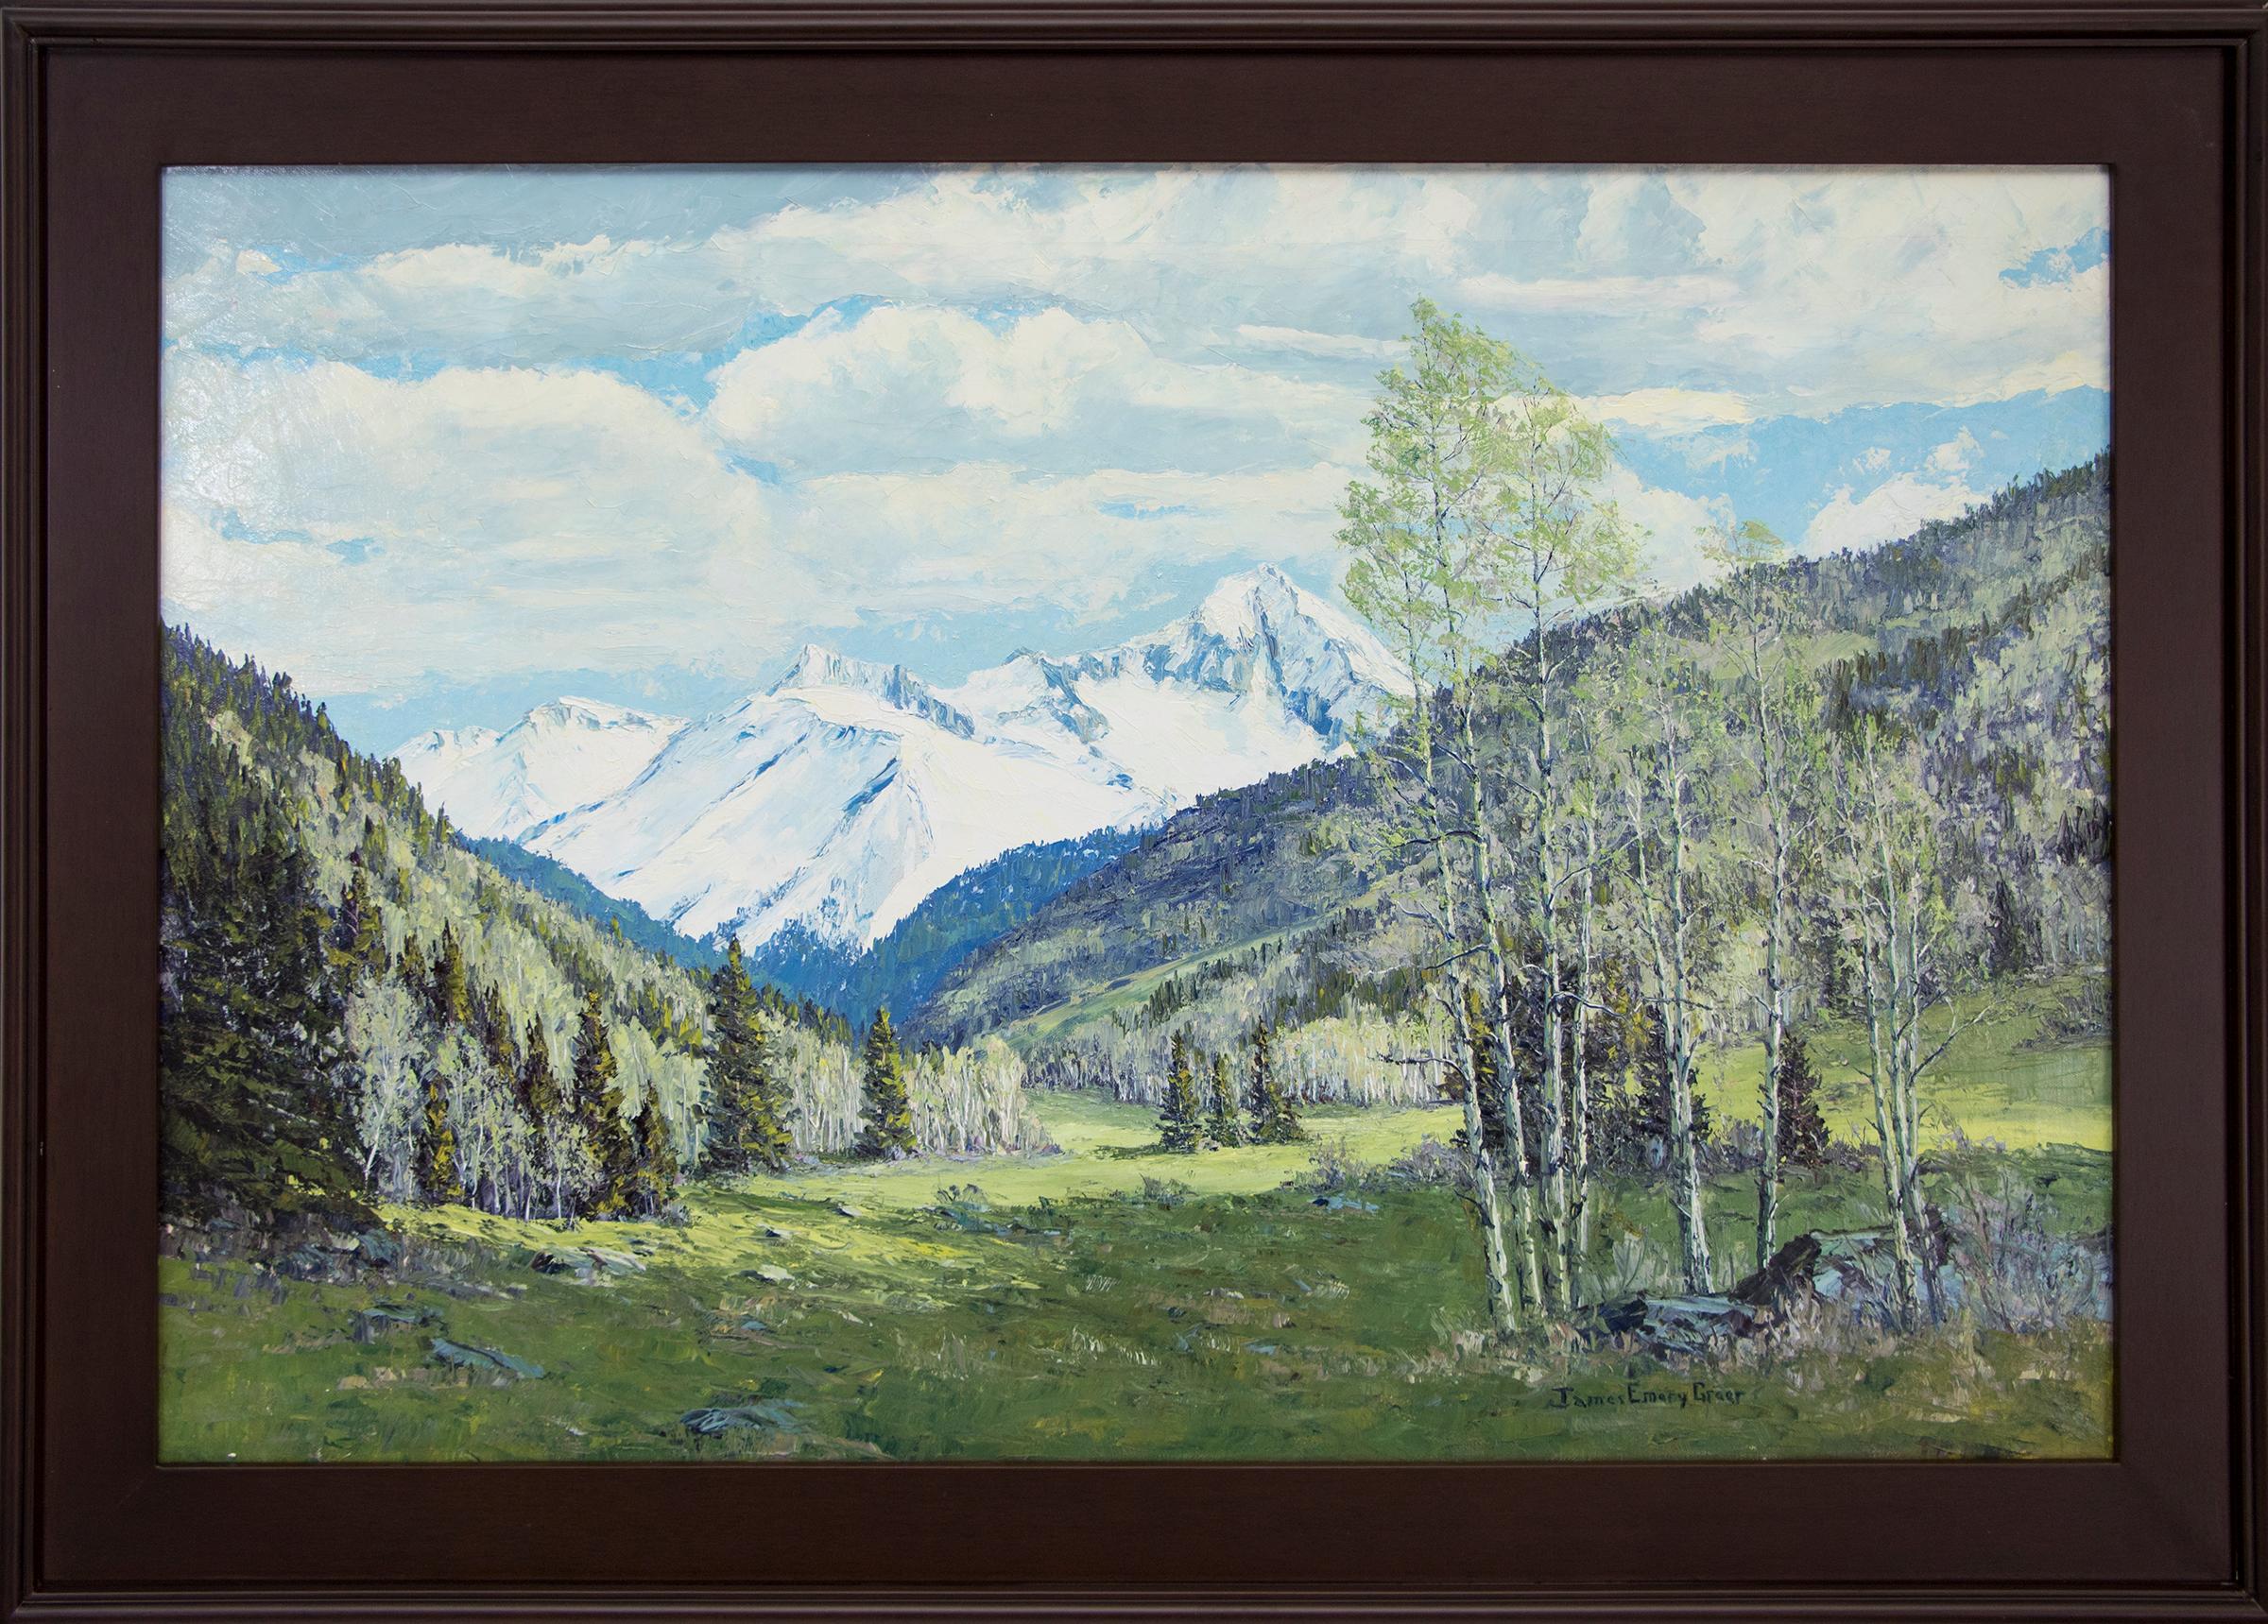 James Emery Greer Landscape Painting – Rene Renewal - Grizzly Peak San Juans (Farbenfrohe Berglandschaft im Frühling)